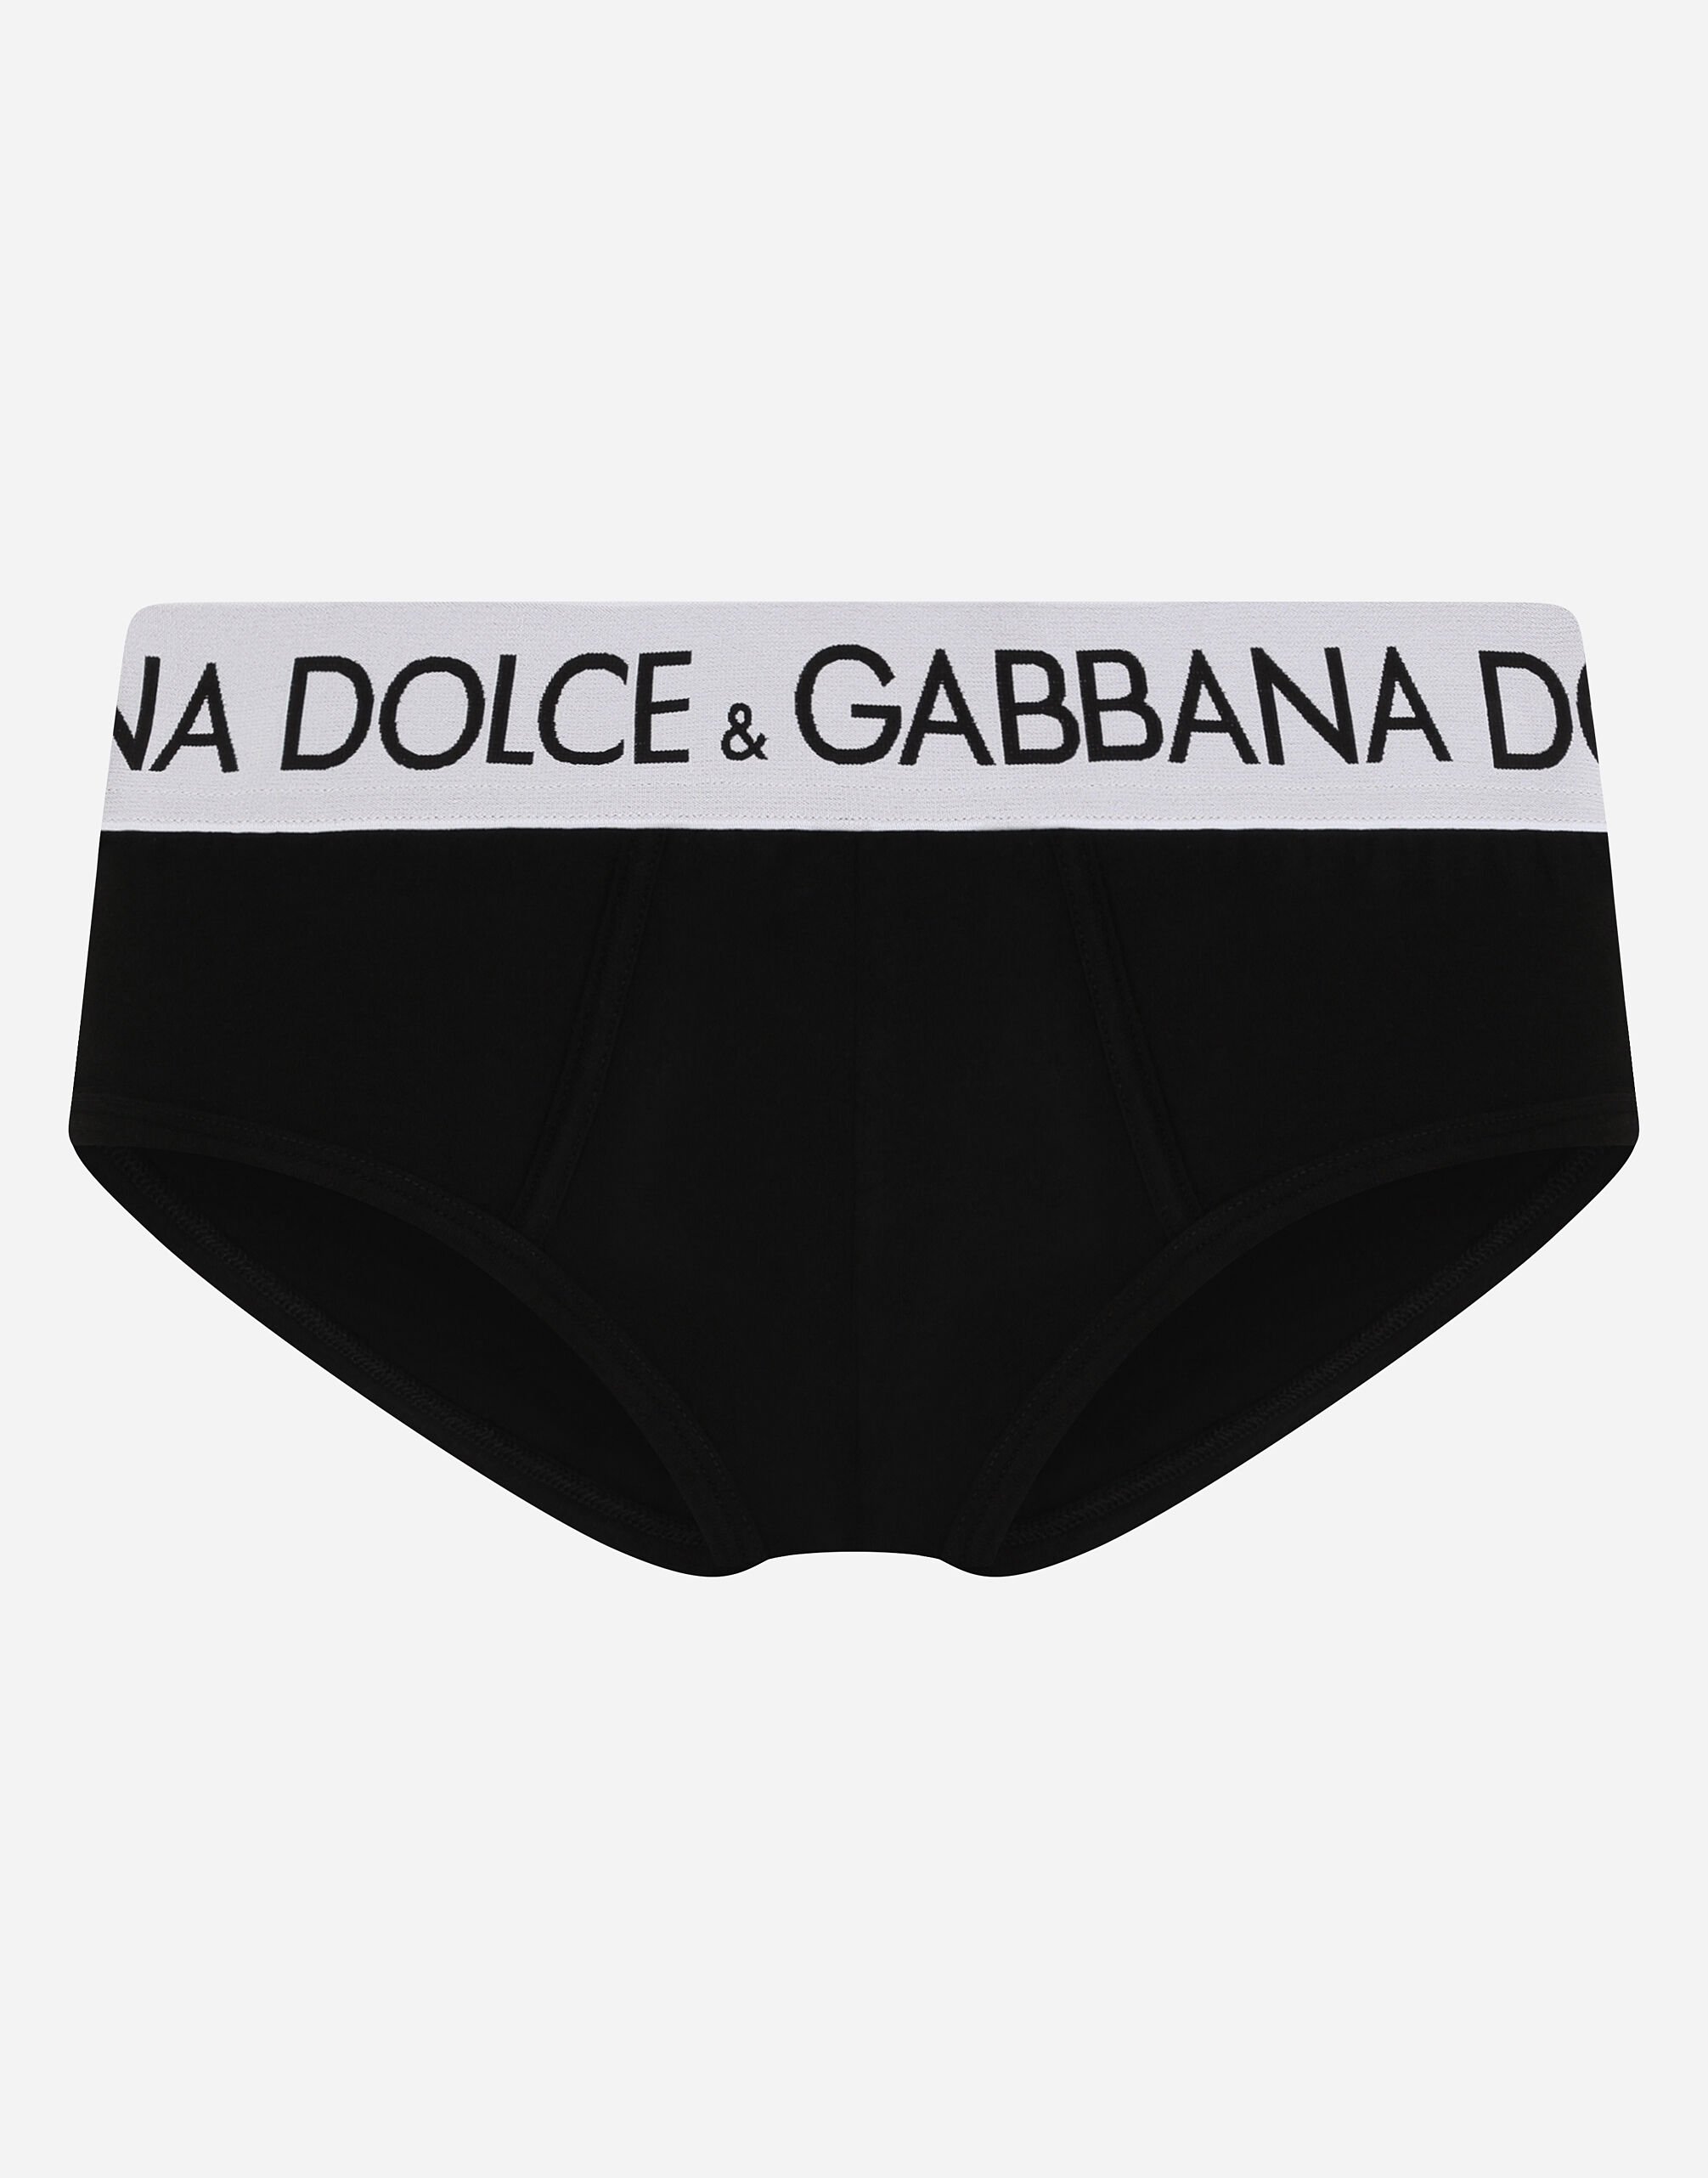 Dolce&Gabbana Brando two-way stretch jersey briefs Pale Pink I0210MFU1AU